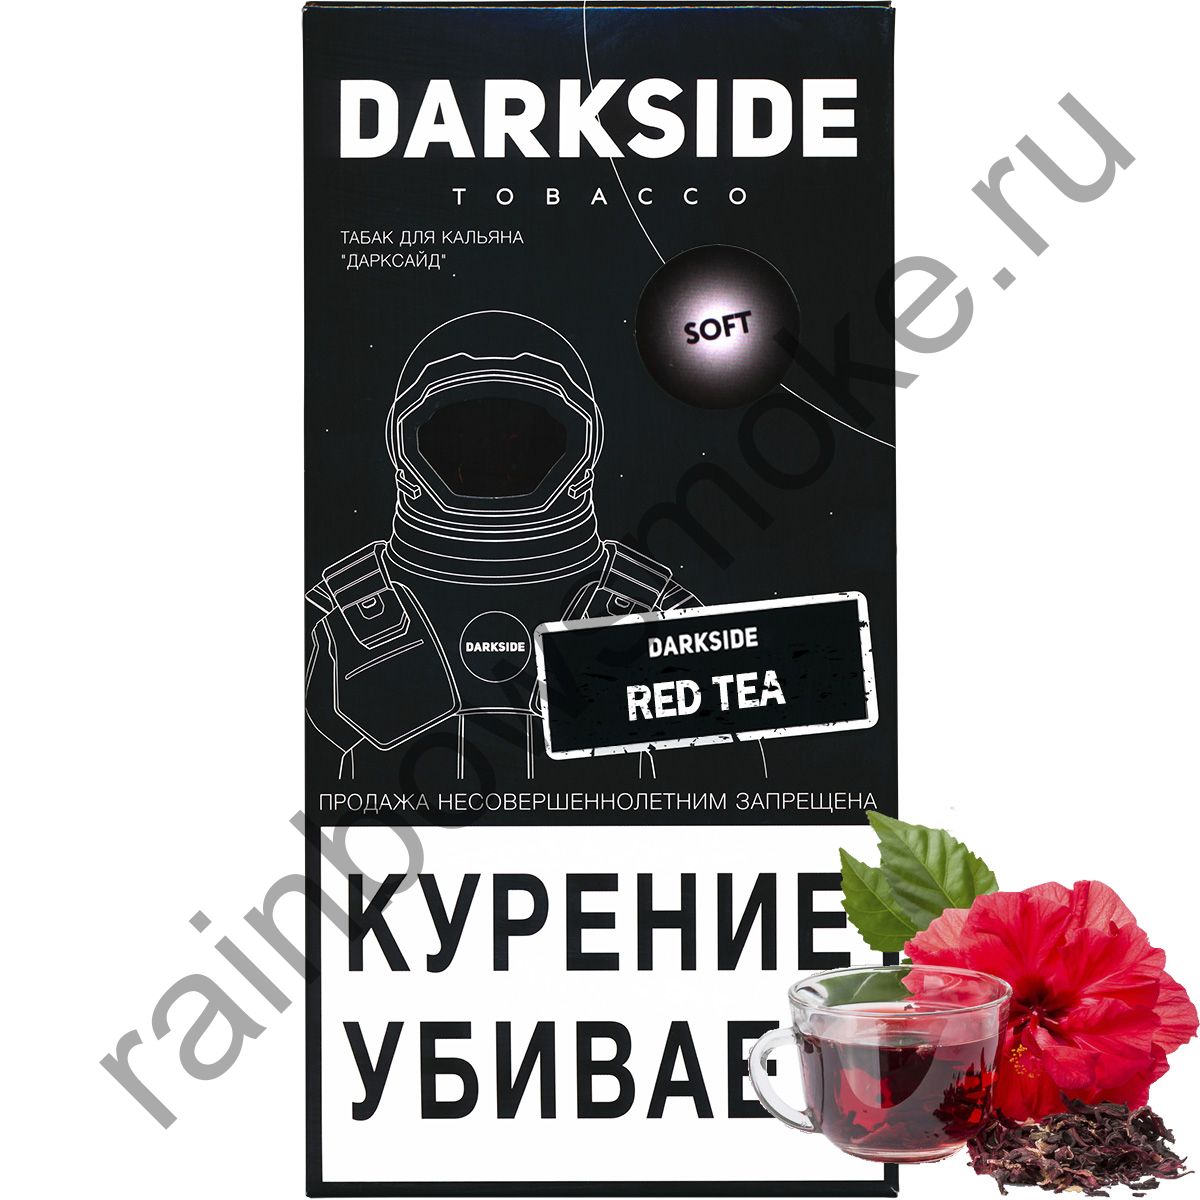 Red dark side. Дарксайд Red Tea. Red Tea Dark Side вкус. Ред ти Дарксайд вкус. Табак Dark Side Breaking Red.